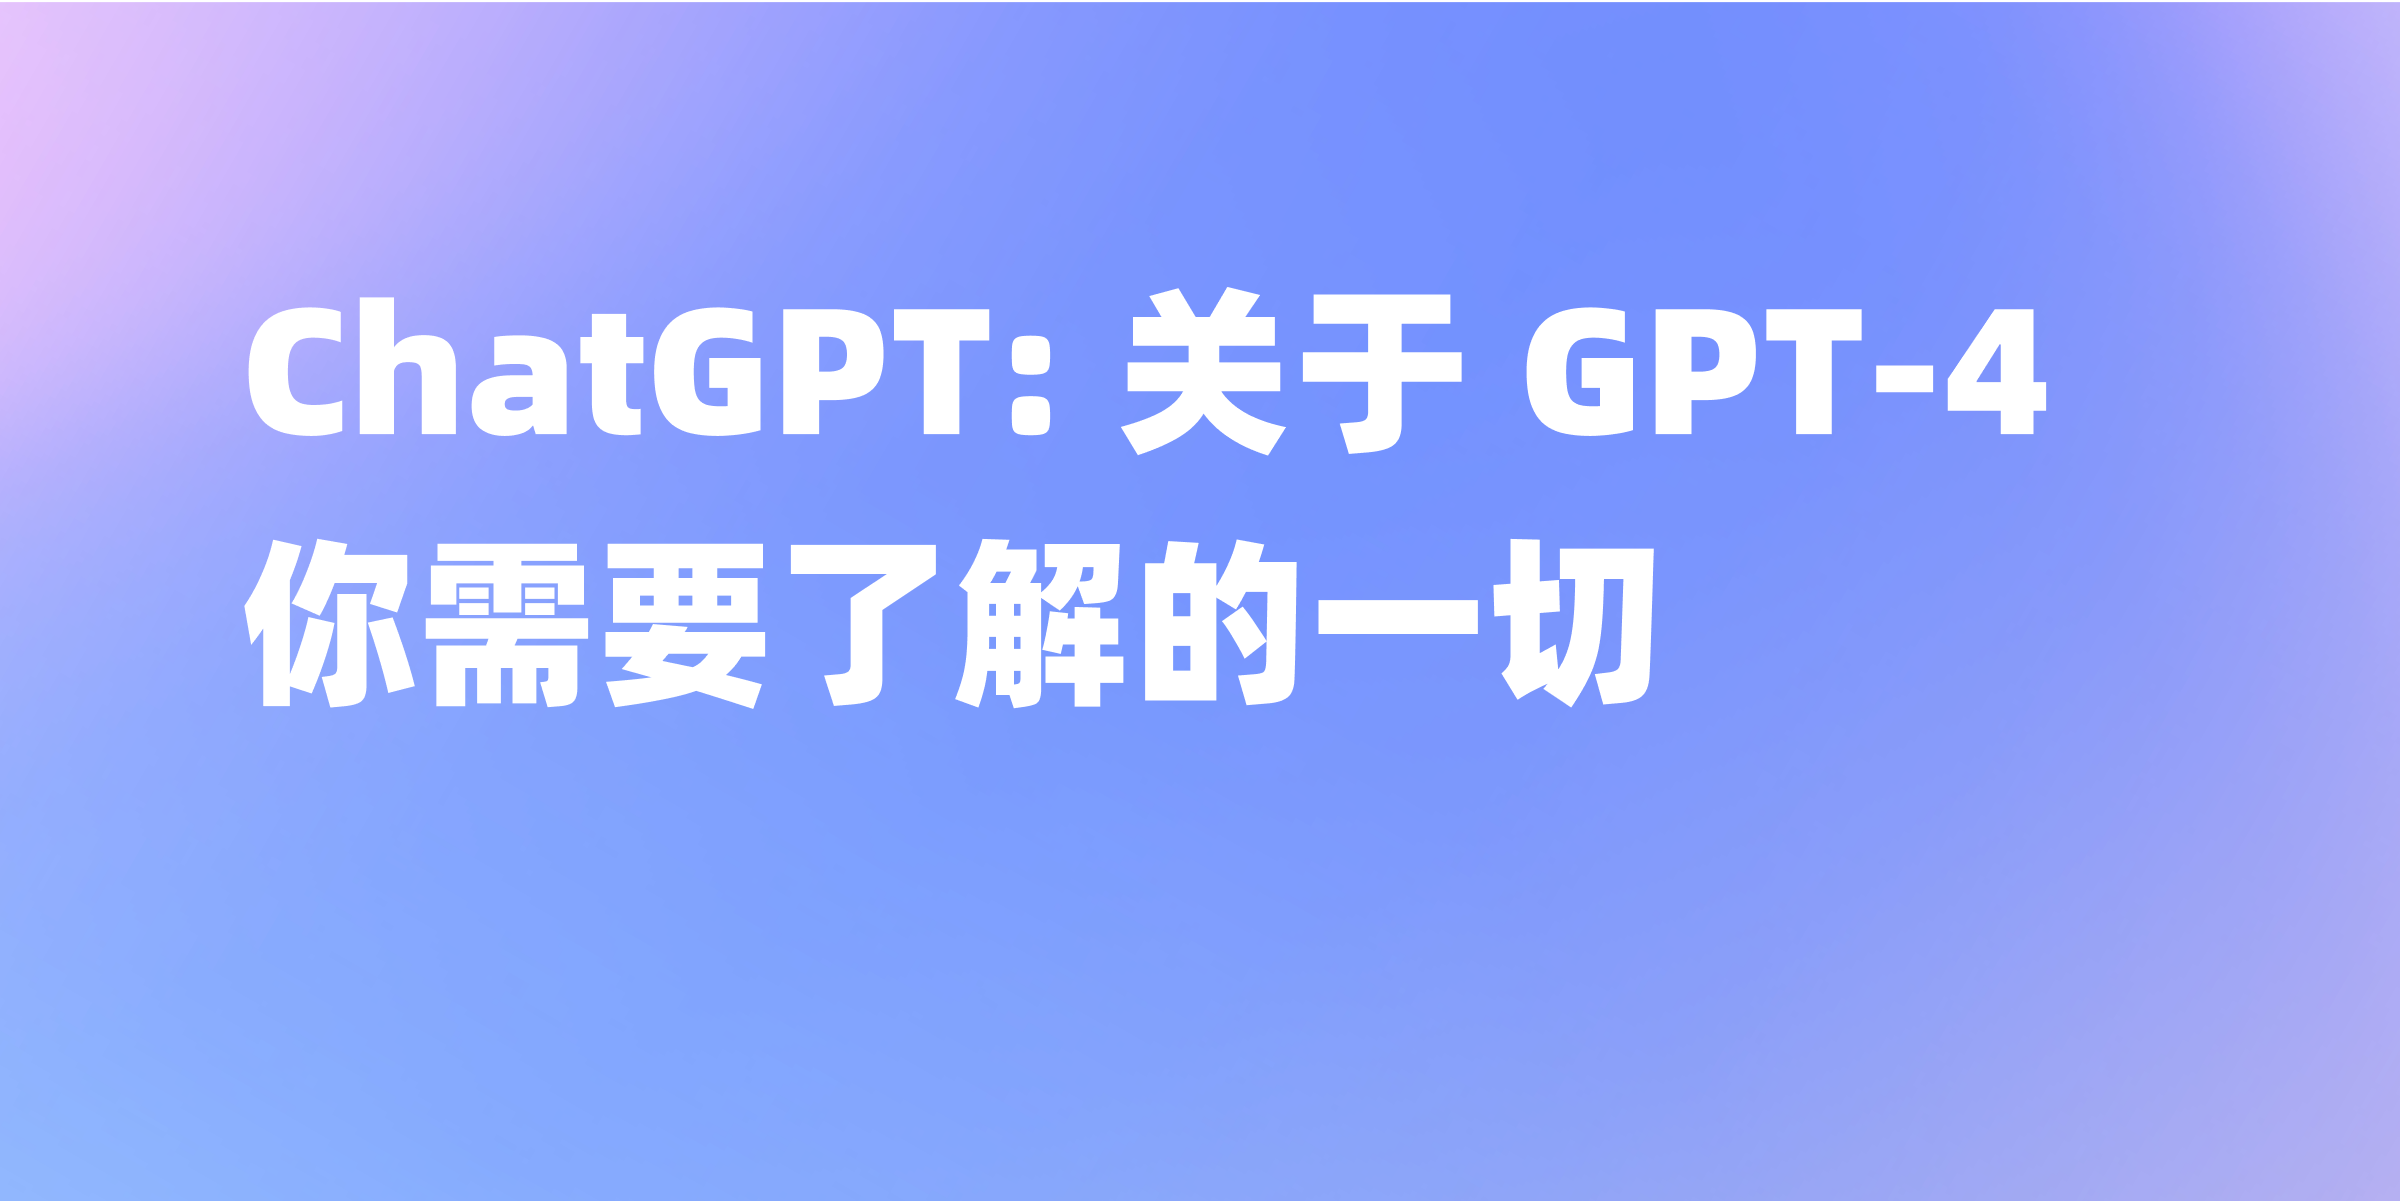 ChatGPT: 关于 GPT-4 你需要了解的一切